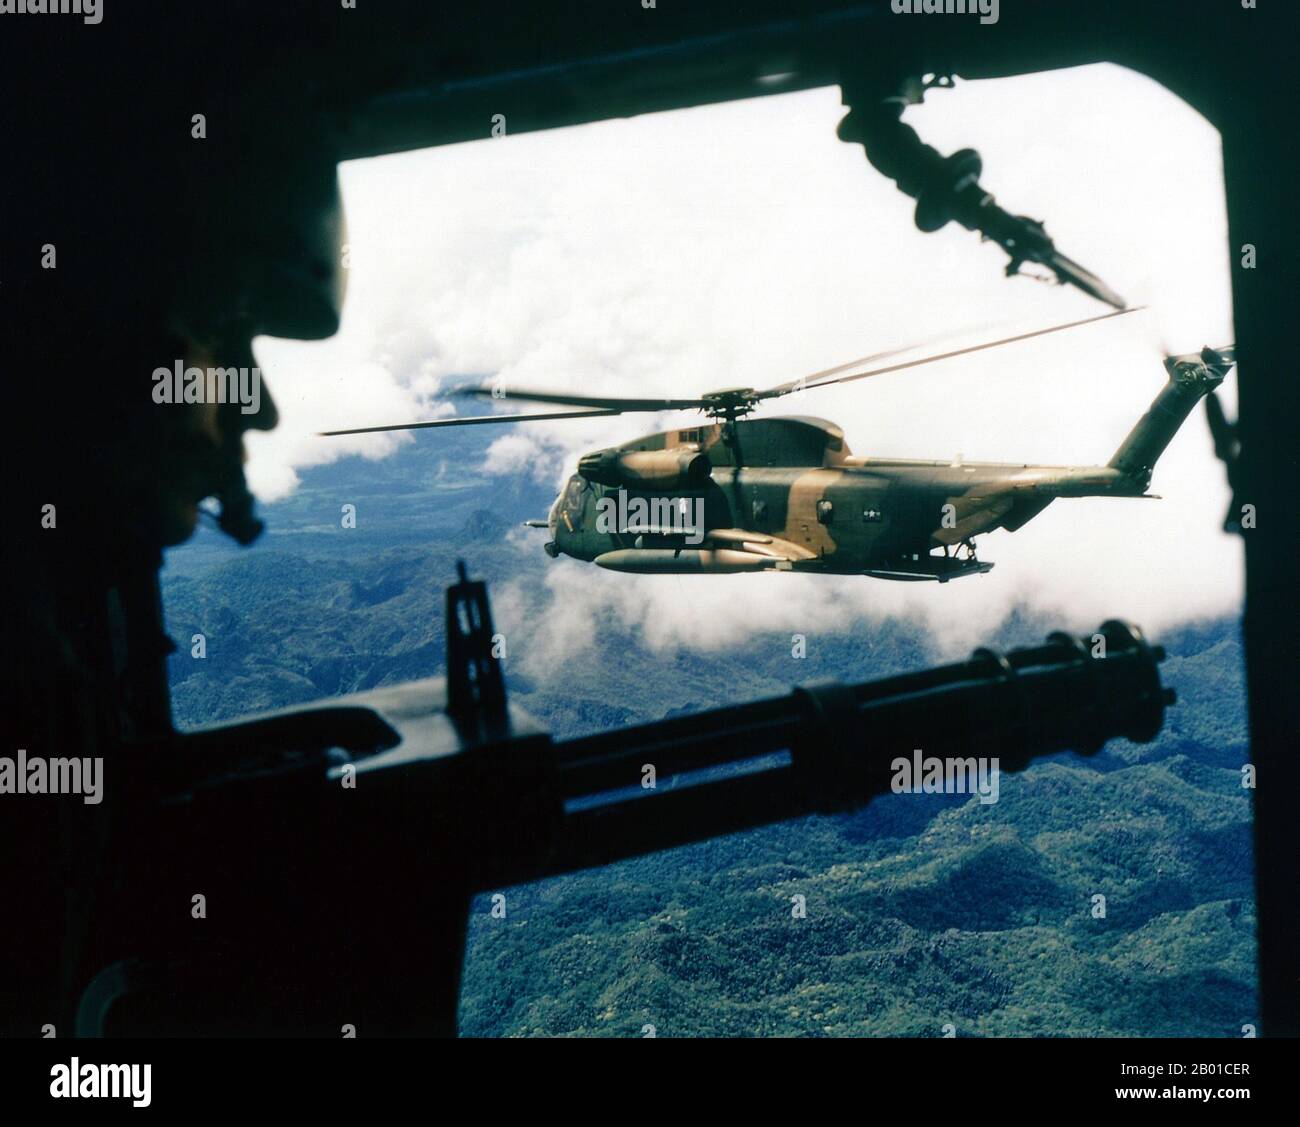 Vietnam : un hélicoptère Super Jolly Green Giant de la Force aérienne américaine Sikorsky HH-53 vu de la position du tireur dans un hélicoptère de l'escadron des opérations spéciales 21st, Vietnam. Photo de Ken Hackman (domaine public), octobre 1972. La deuxième guerre d'Indochine, connue en Amérique sous le nom de guerre du Vietnam, a été un conflit militaire de l'époque de la Guerre froide qui s'est produit au Vietnam, au Laos et au Cambodge du 1 novembre 1955 à la chute de Saigon le 30 avril 1975. Cette guerre a suivi la première guerre d'Indochine et a été menée entre le Nord du Vietnam et le gouvernement du Sud du Vietnam, soutenu par les États-Unis. Banque D'Images